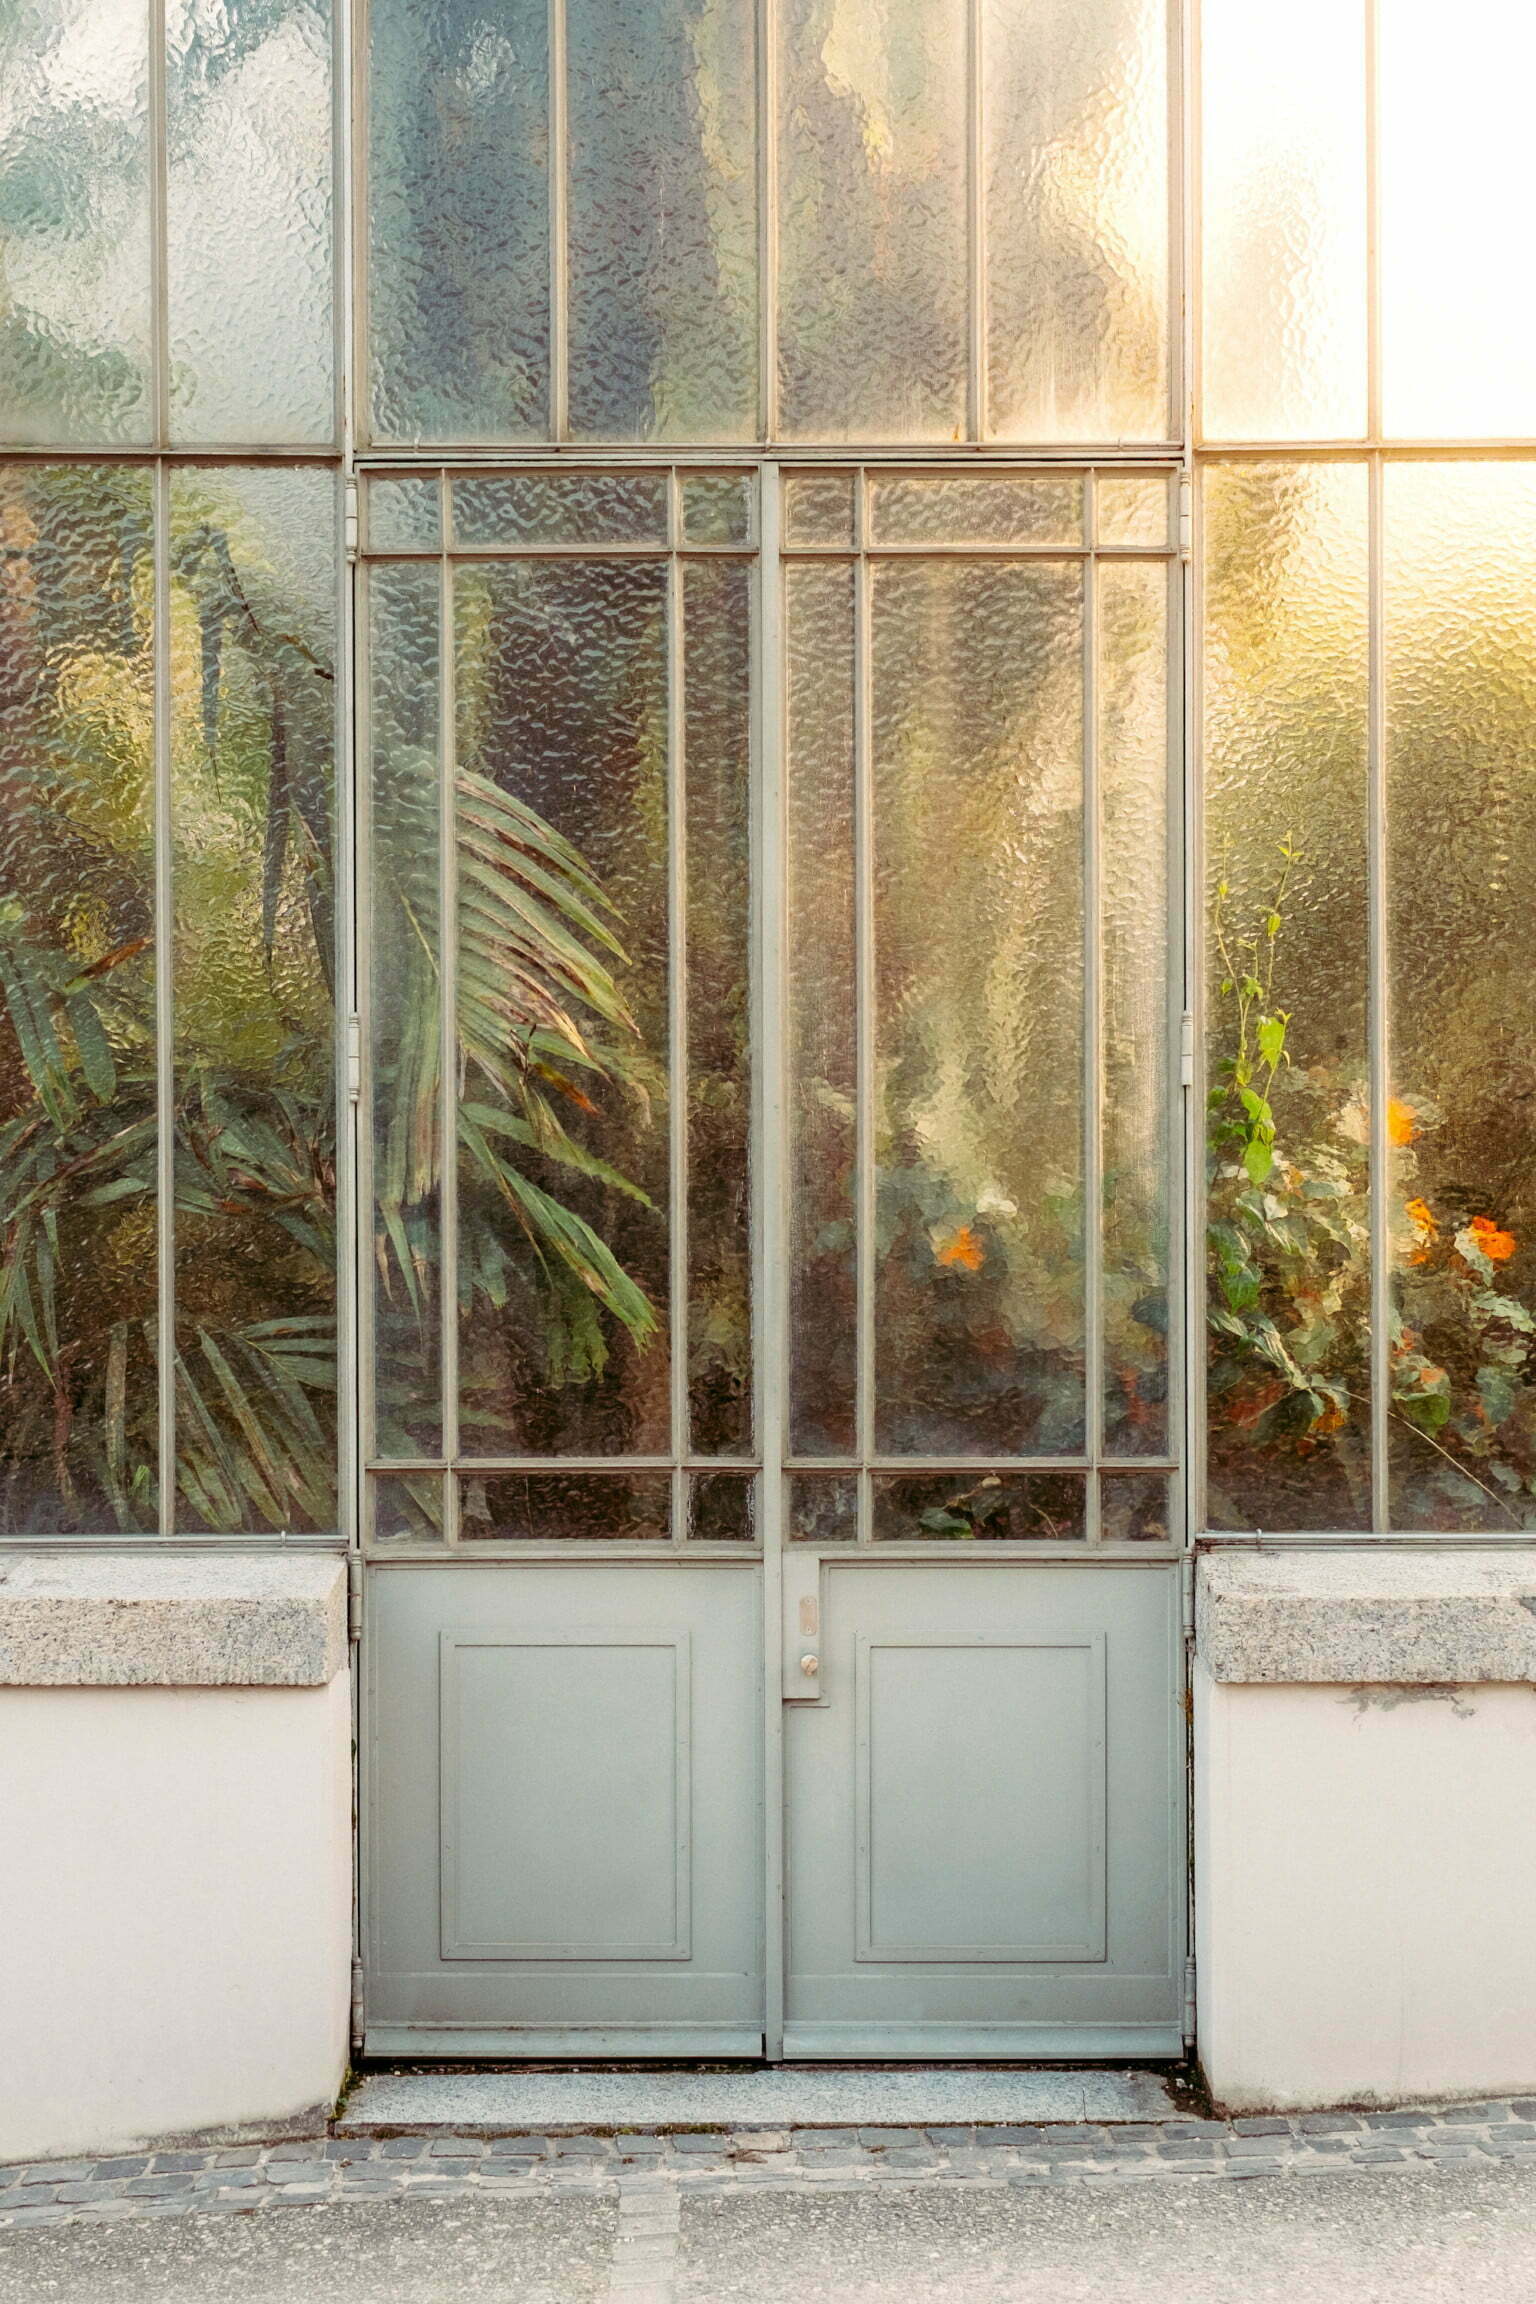 Снимки на растения, докосващи стъклата на оранжерията, в които са отглеждани